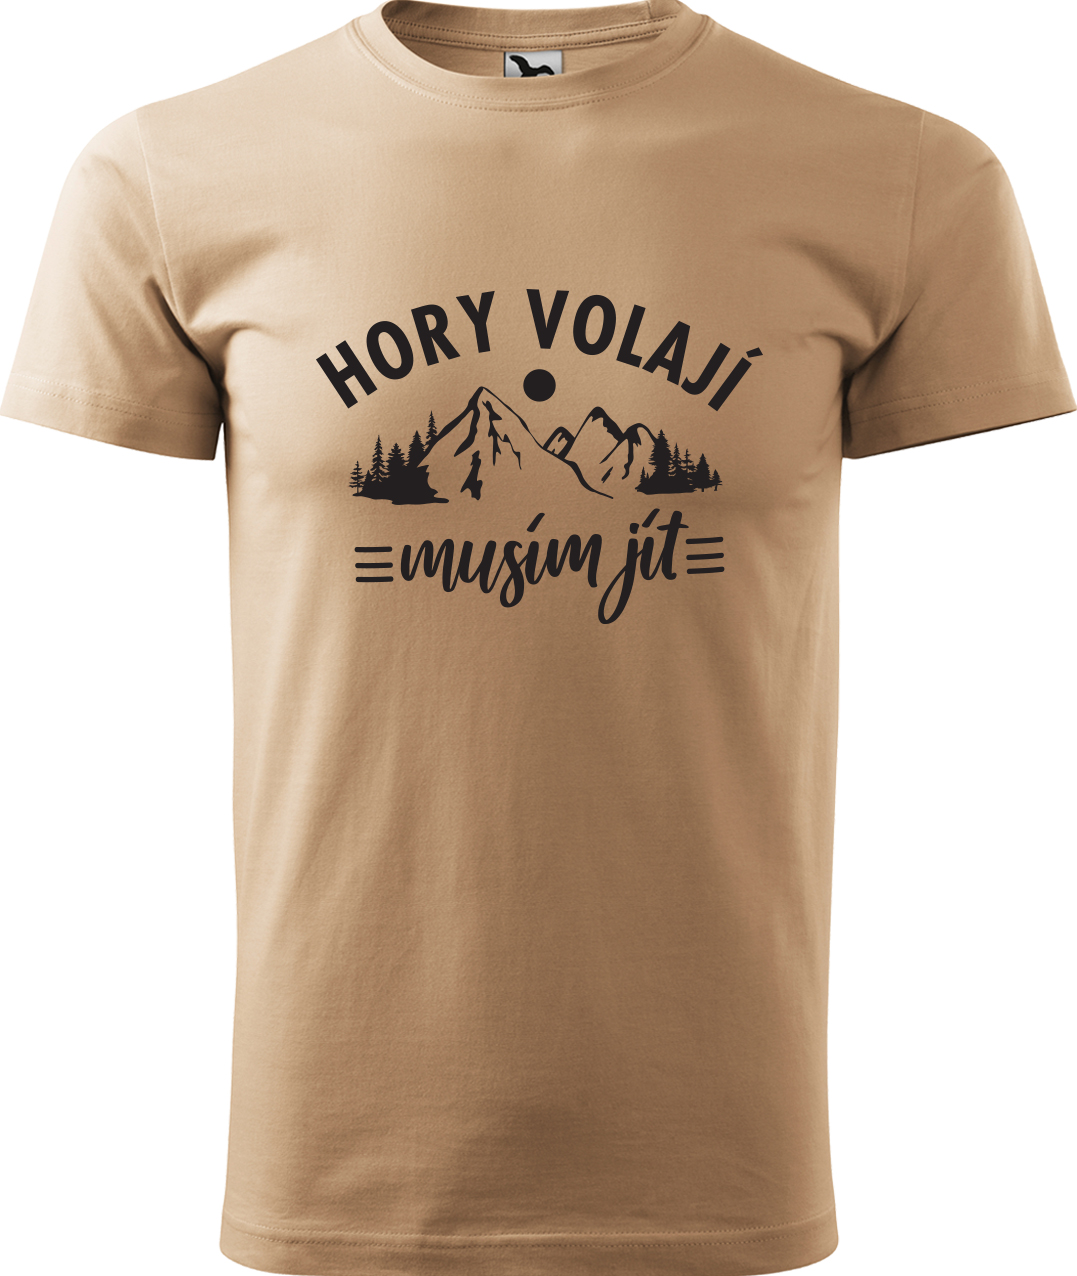 Pánské tričko na hory - Hory volají, musím jít Velikost: XL, Barva: Písková (08), Střih: pánský